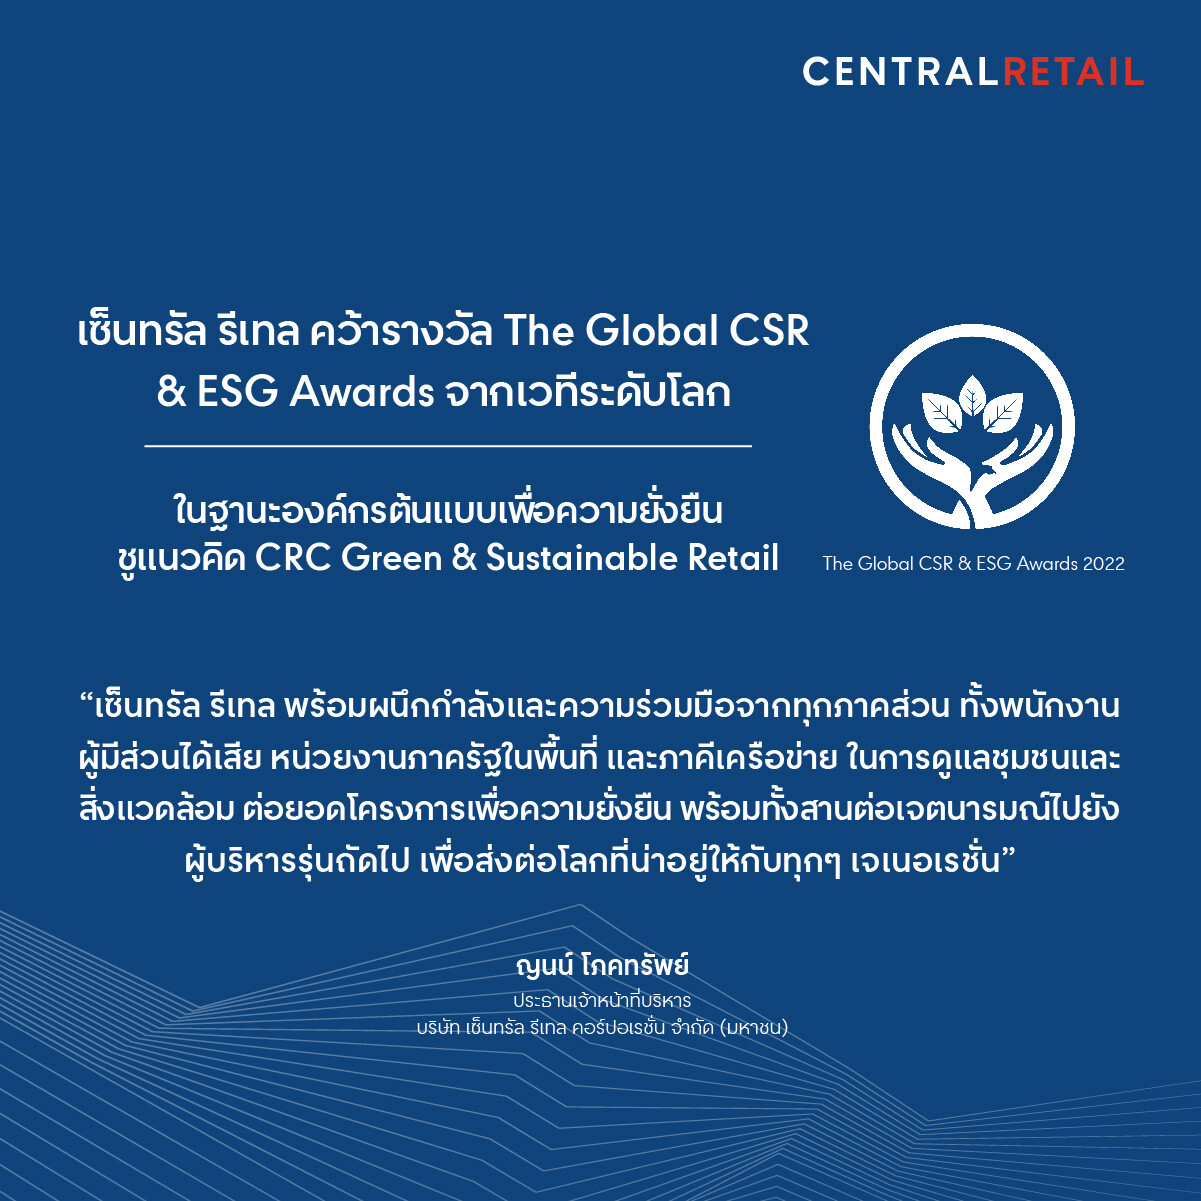 เซ็นทรัล รีเทล คว้ารางวัล The Global CSR & ESG Awards จากเวทีระดับโลก ตอกย้ำการเป็นองค์กรต้นแบบเพื่อความยั่งยืน ชู CRC Green & Sustainable Retail แห่งแรกของเอเชีย